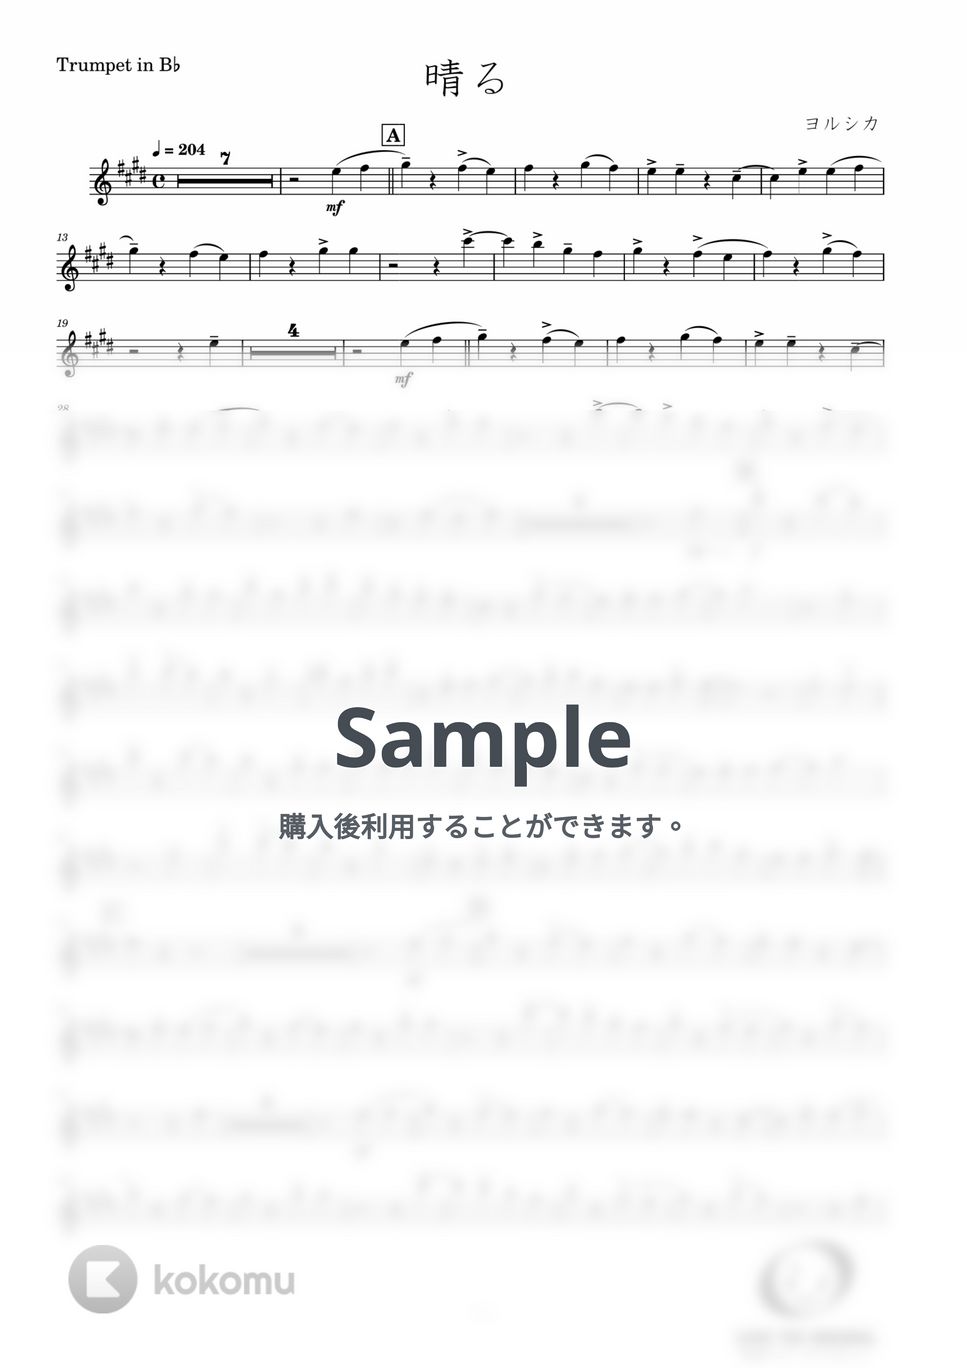 ヨルシカ - 晴る (Trumpet Solo) by Windworld